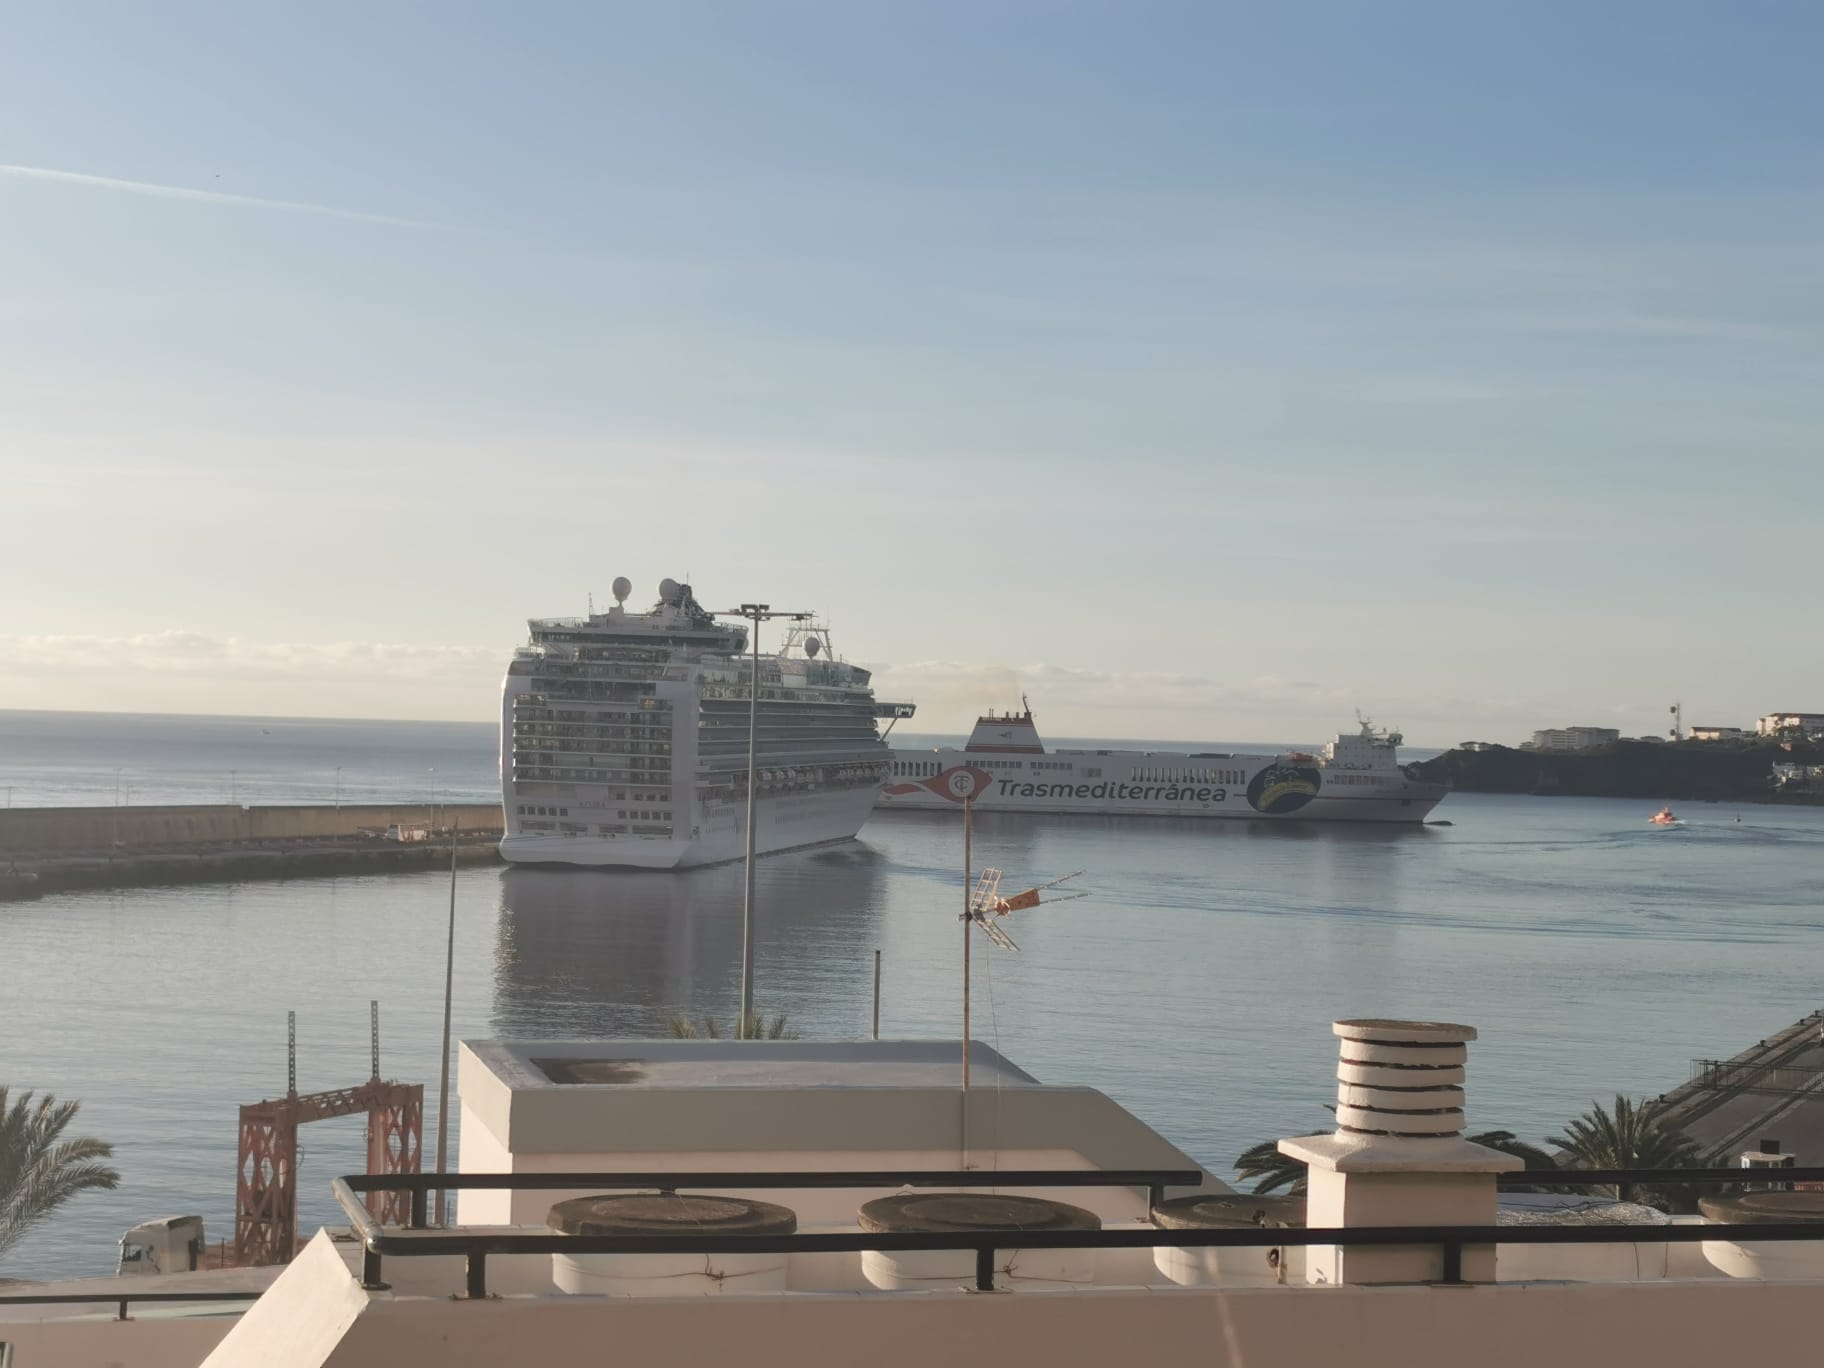 FEDEPALMA muestra su rechazo por la cancelación de la escala del MSC Seaview en el puerto de Santa Cruz de La Palma